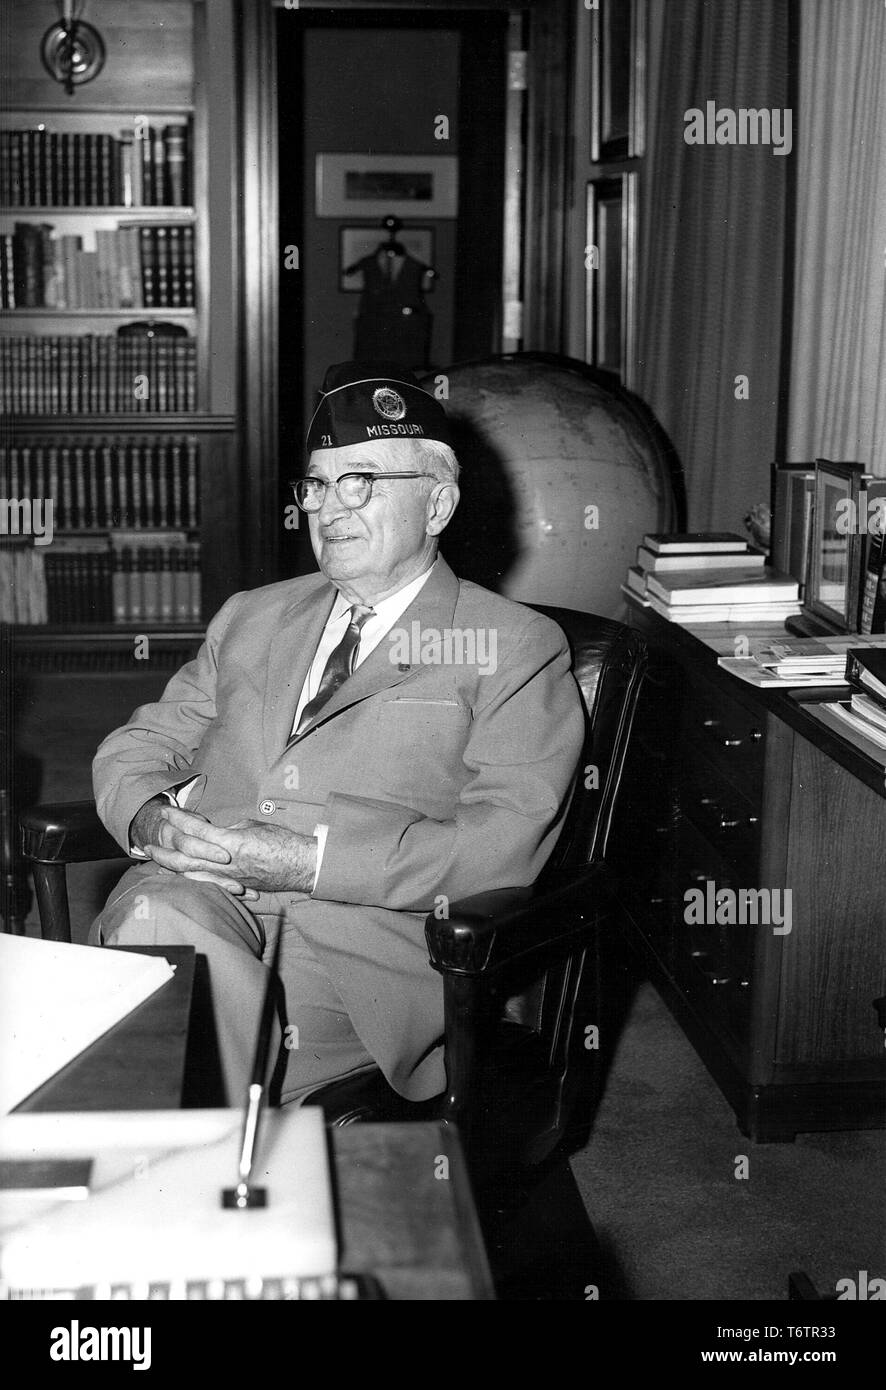 Candid von Harry S Truman, der als Präsident der Vereinigten Staaten von 1945 bis 1953 gedient, am Schreibtisch in seinem Büro im Truman Library, Juli, 1961. Mit freundlicher Genehmigung der nationalen Archive. Stockfoto